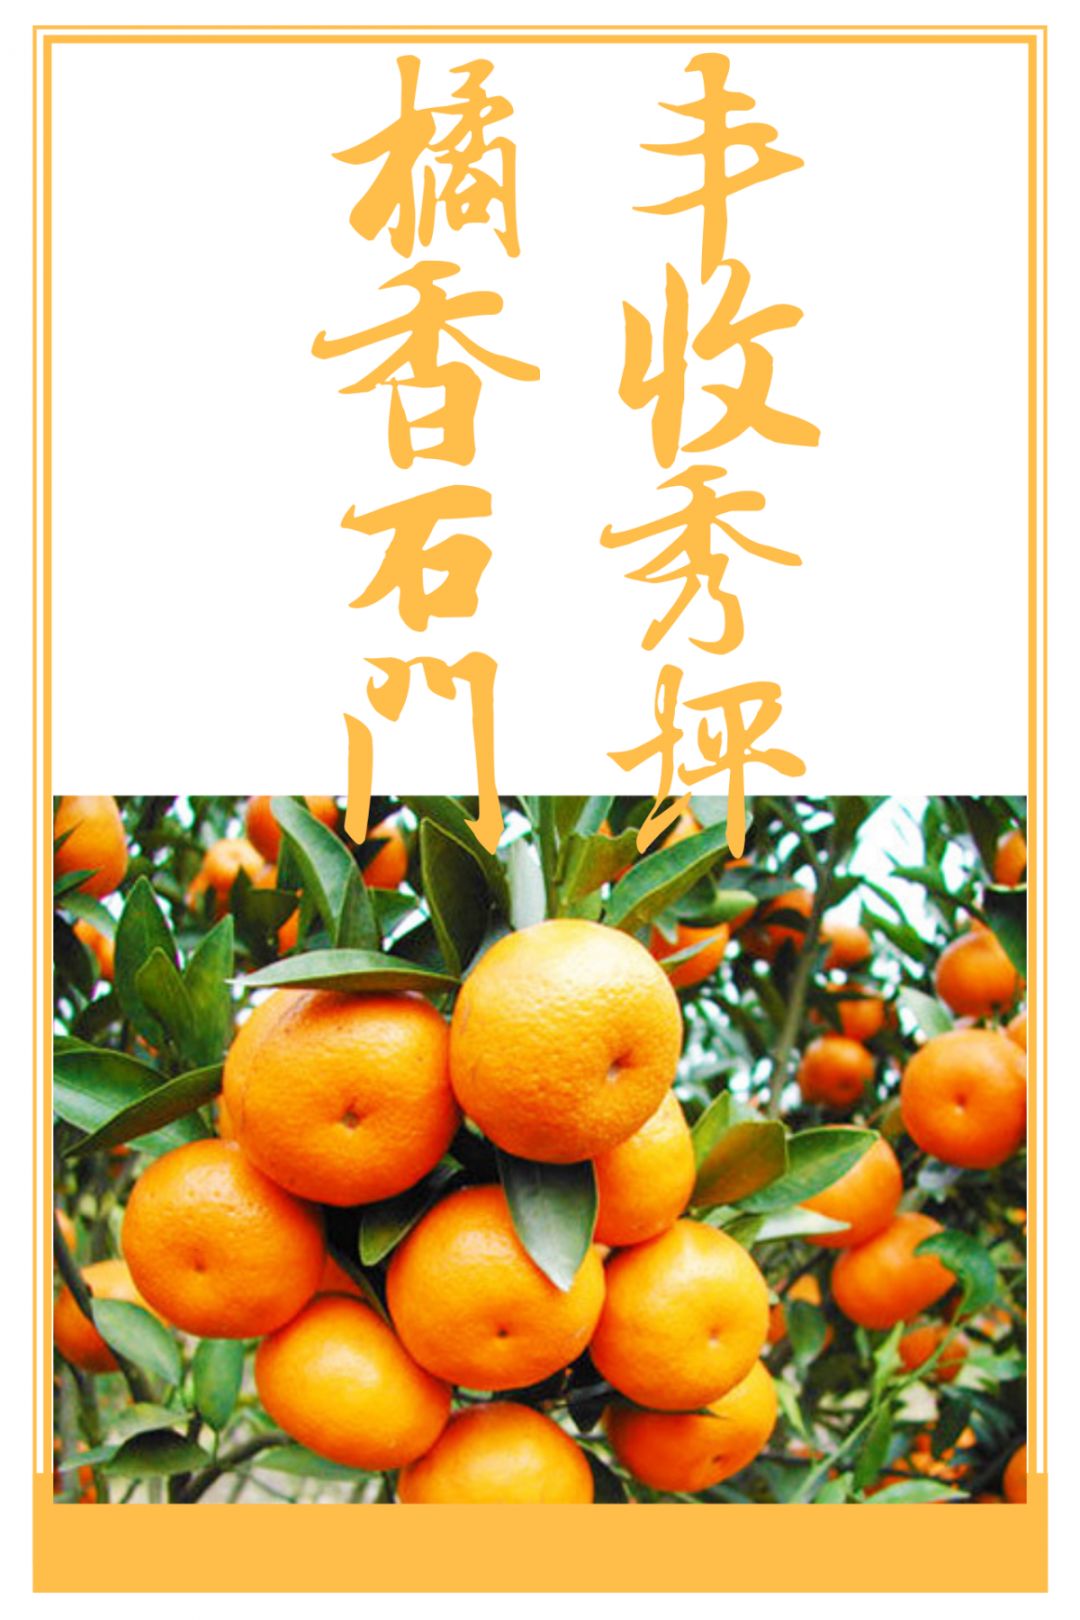 又有意义的柑橘盛宴石门的柑橘红了又是一年一度的石门柑橘节橘香石门